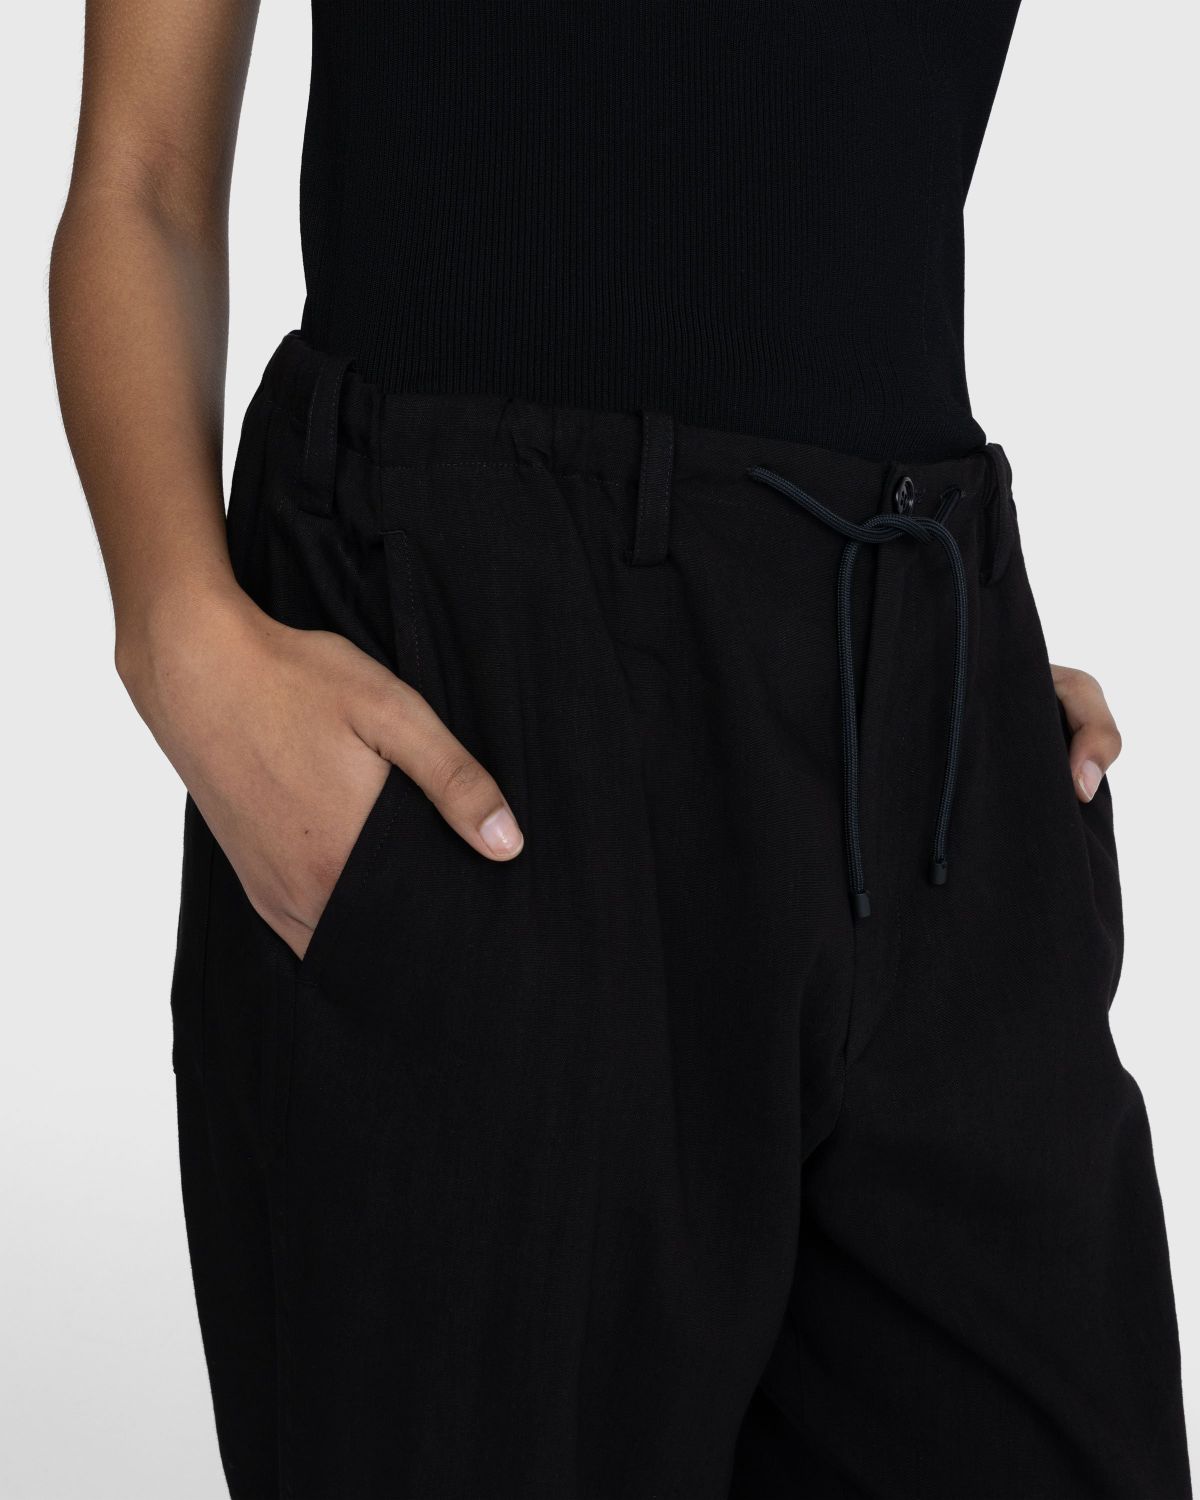 Dries van Noten – Penny Pants Black - Trousers - Black - Image 5